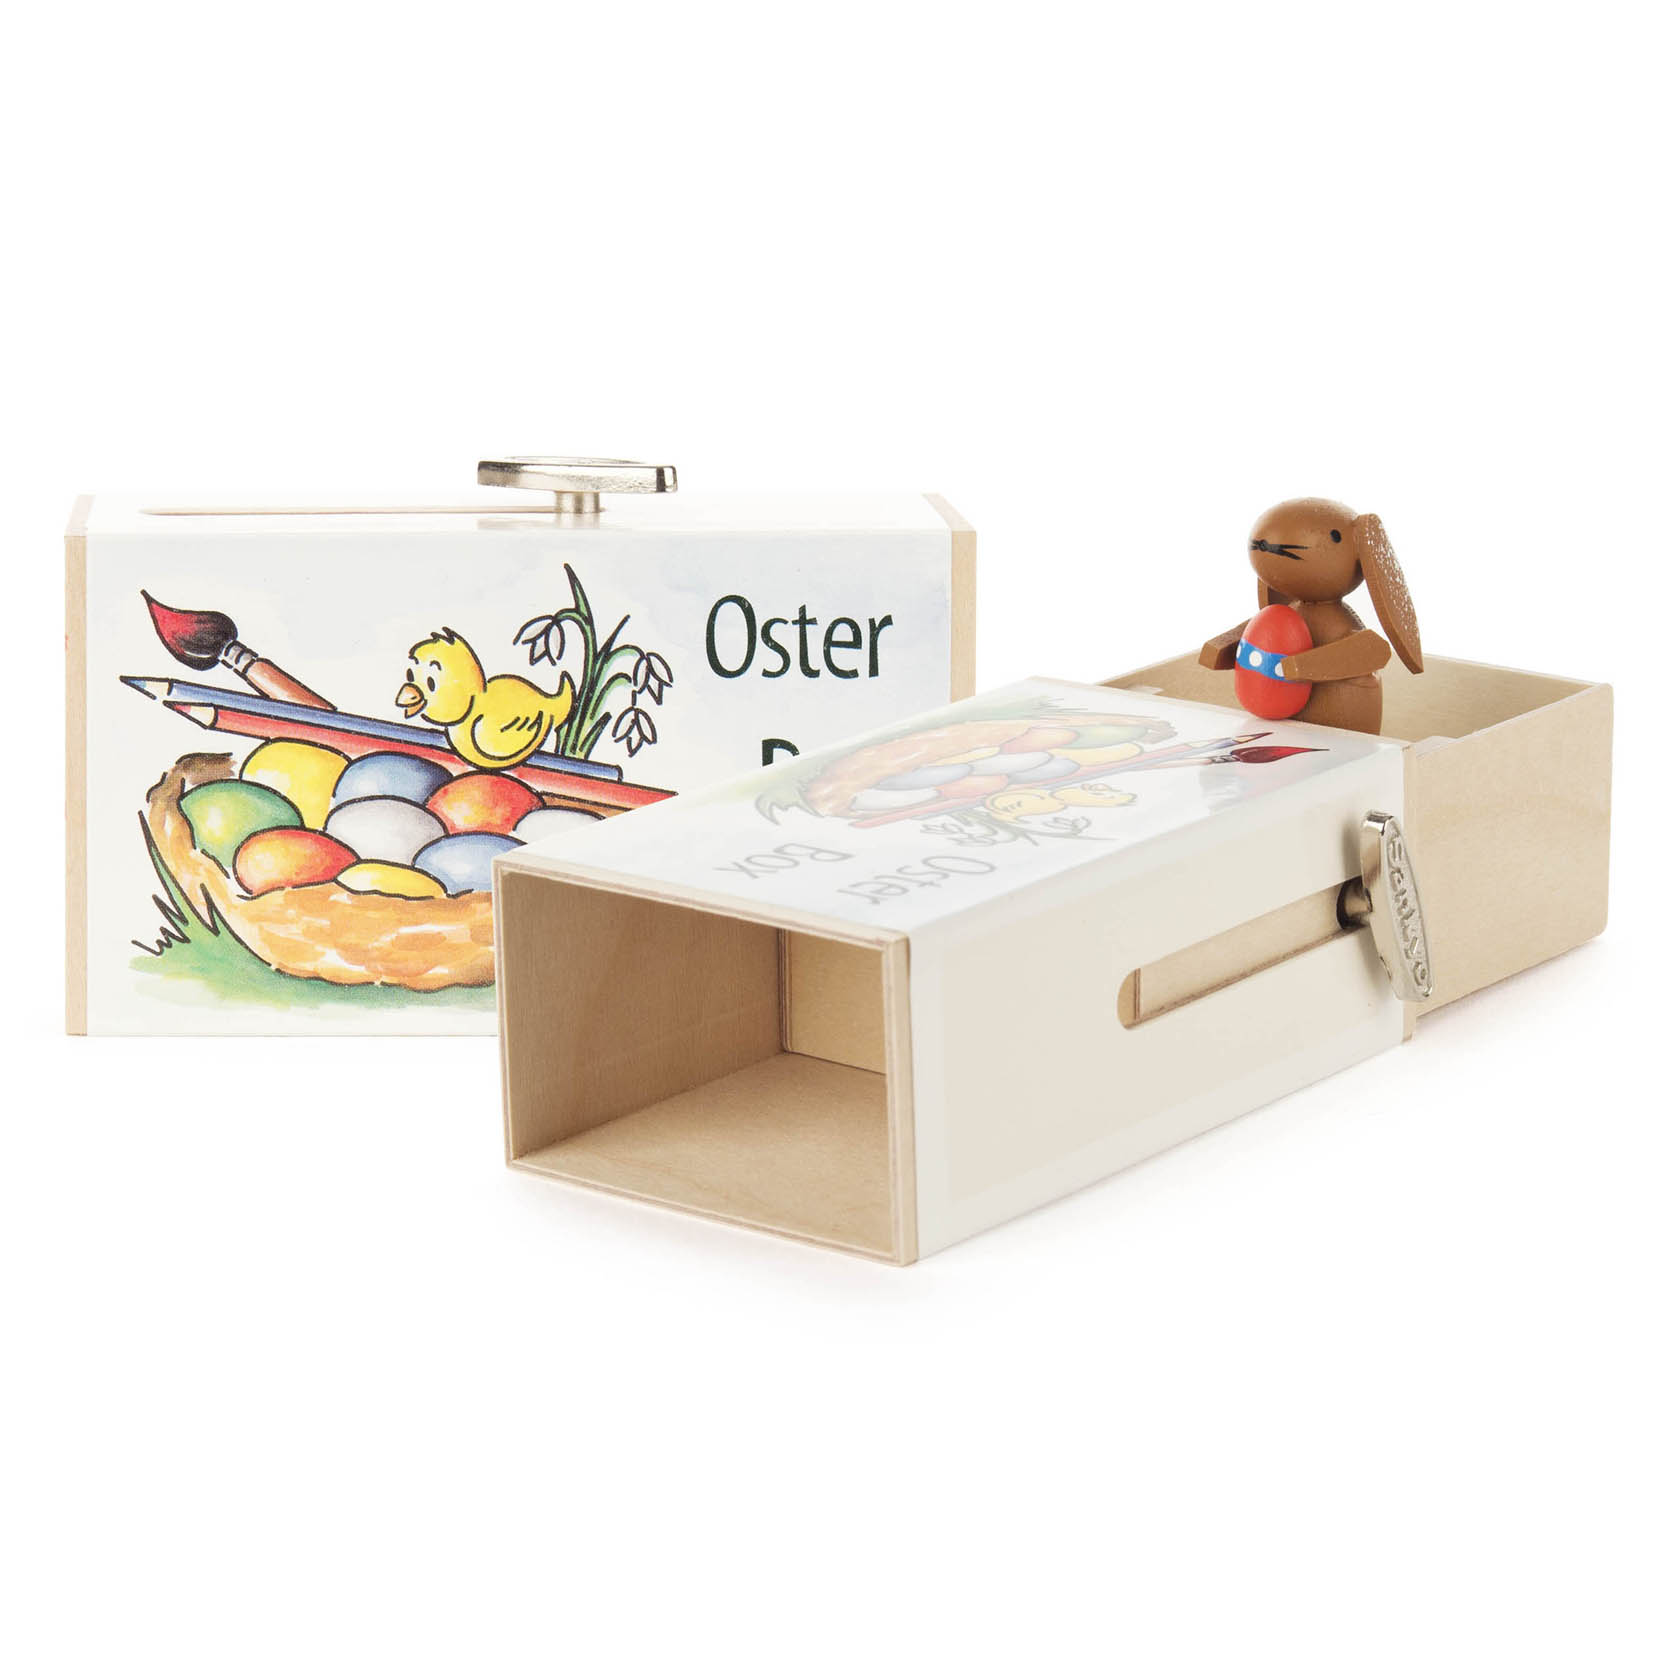 Schiebebox "Oster-Box" mit Hase Melodie: Osterparade im Dregeno Online Shop günstig kaufen